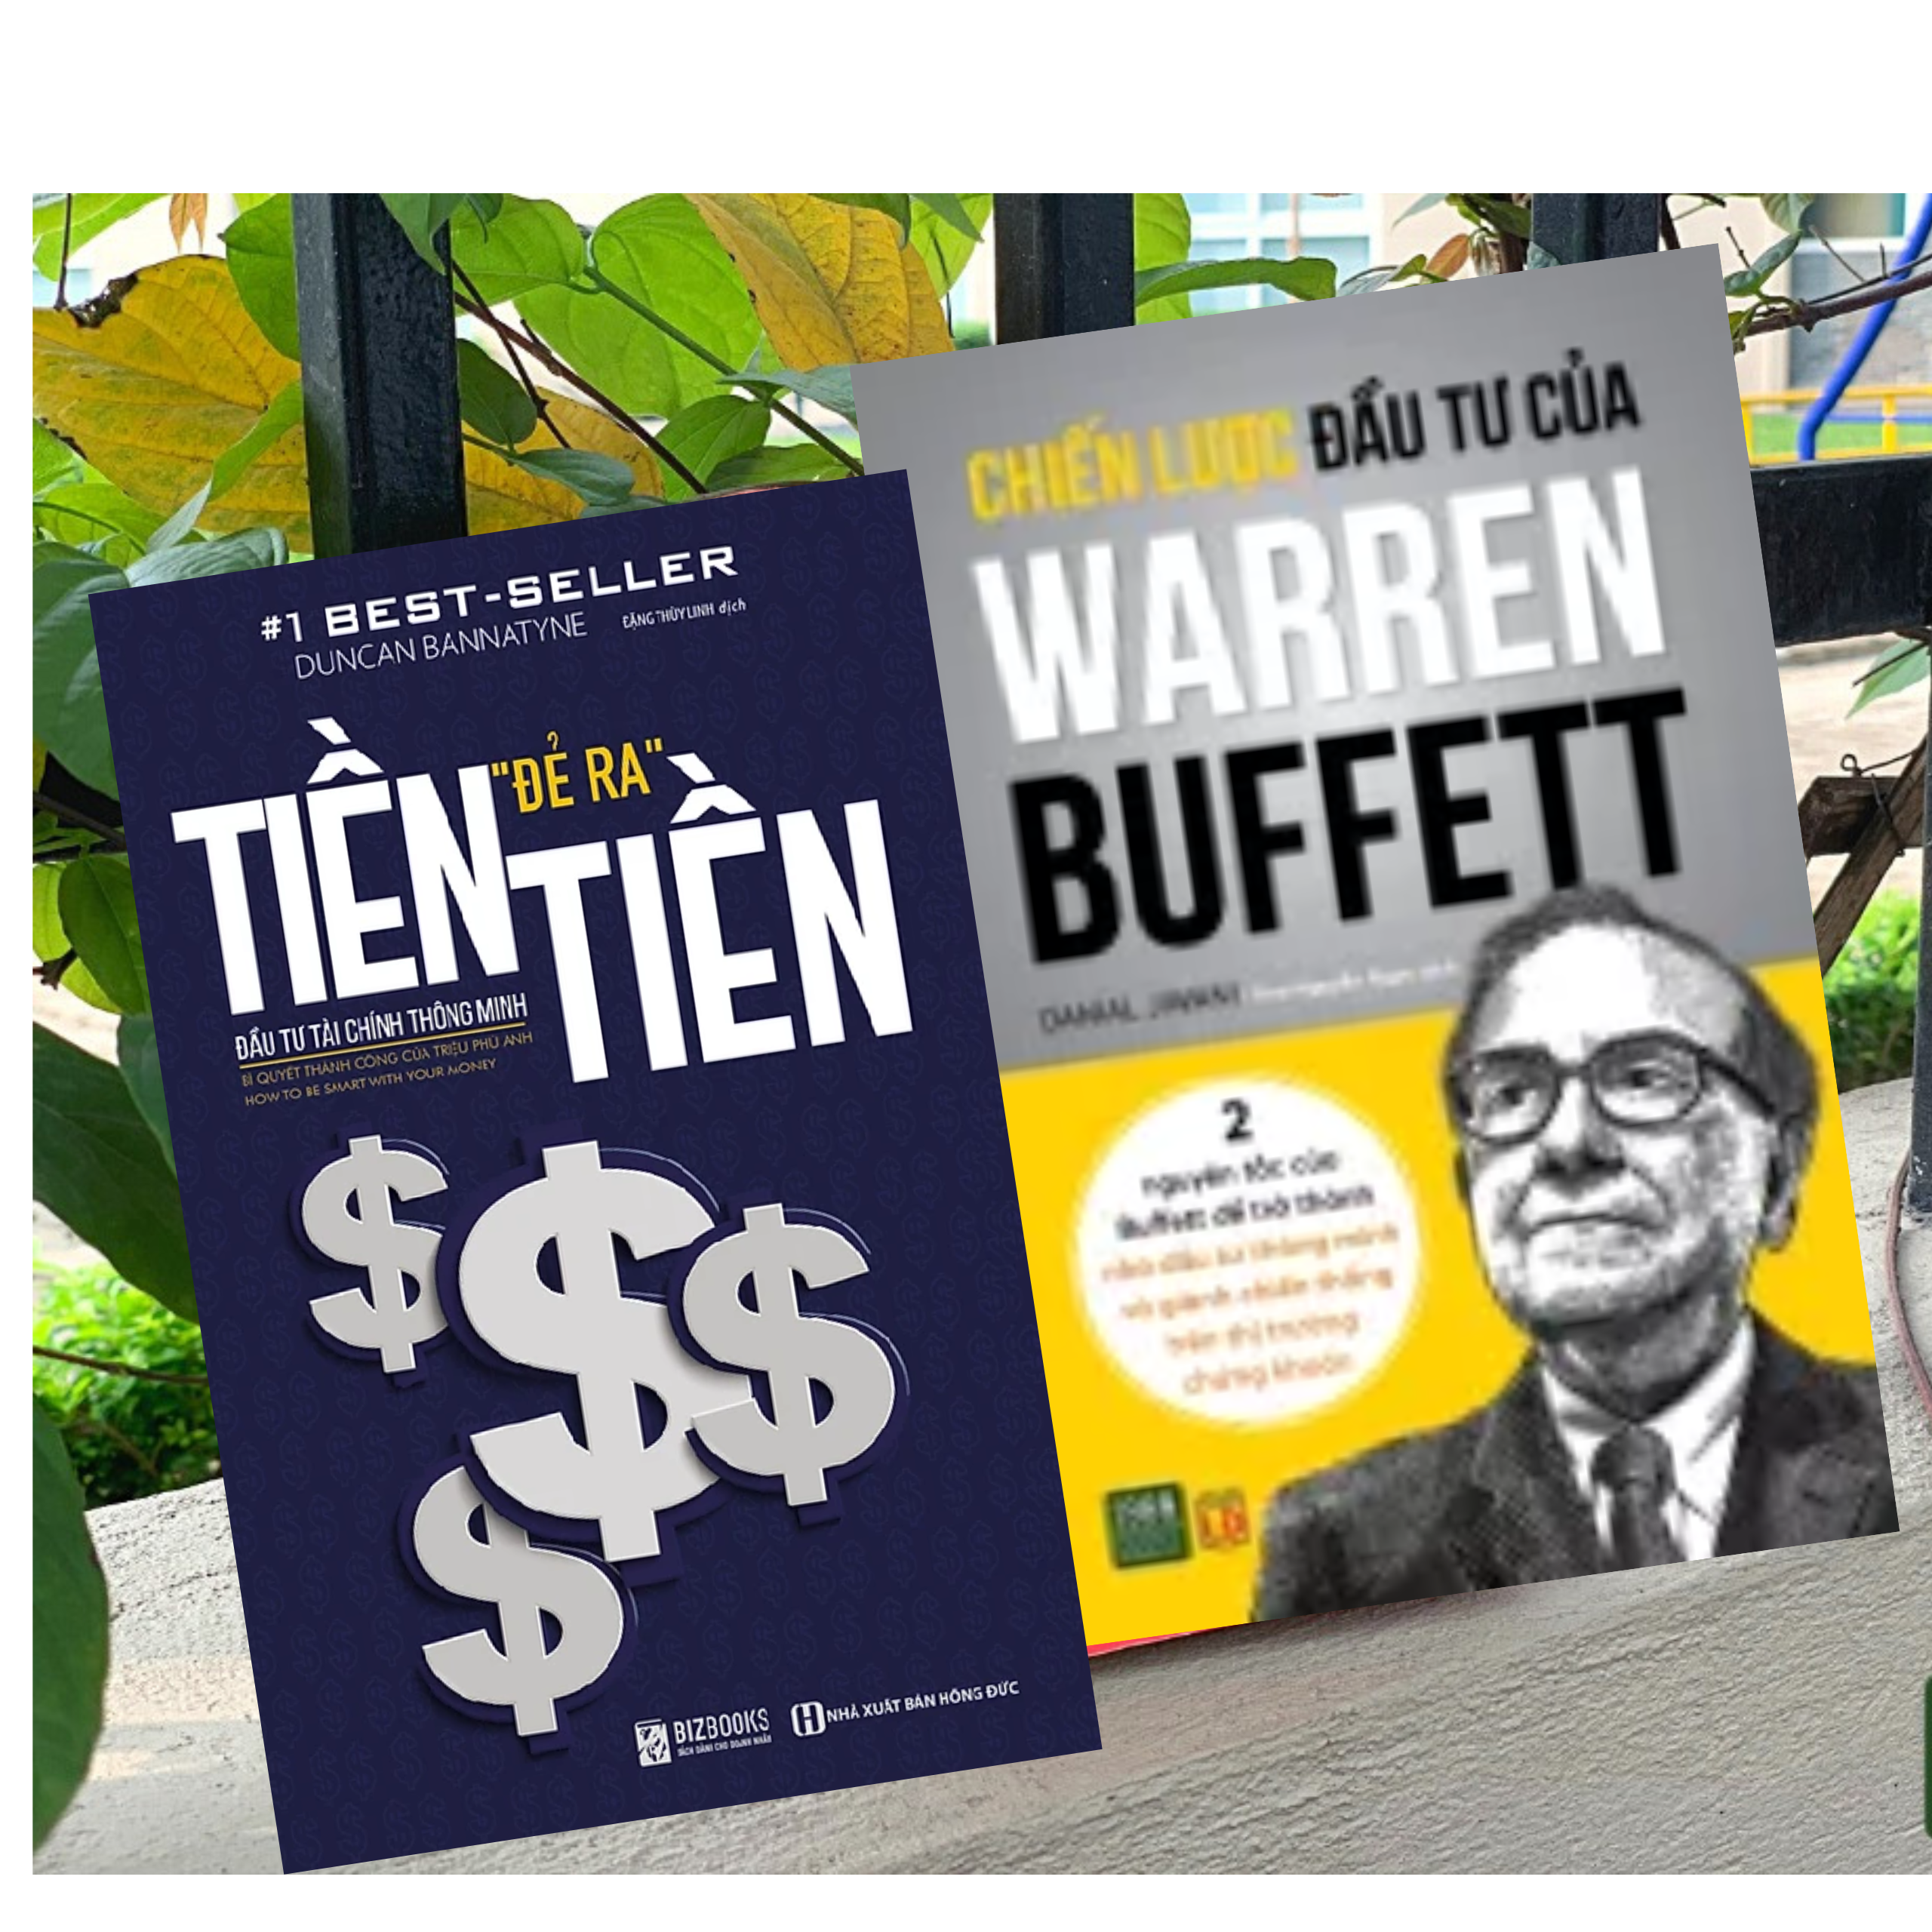 Comb 2Q Sách Kĩ Năng Kinh Doanh Thực Chiến/ Tư Duy Trong Kinh Doanh Thành Công:  Tiền Đẻ Ra Tiền _ Đầu Tư Tài Chính Thông Minh + Chiến Lược Đầu Tư Của Warren Buffett 